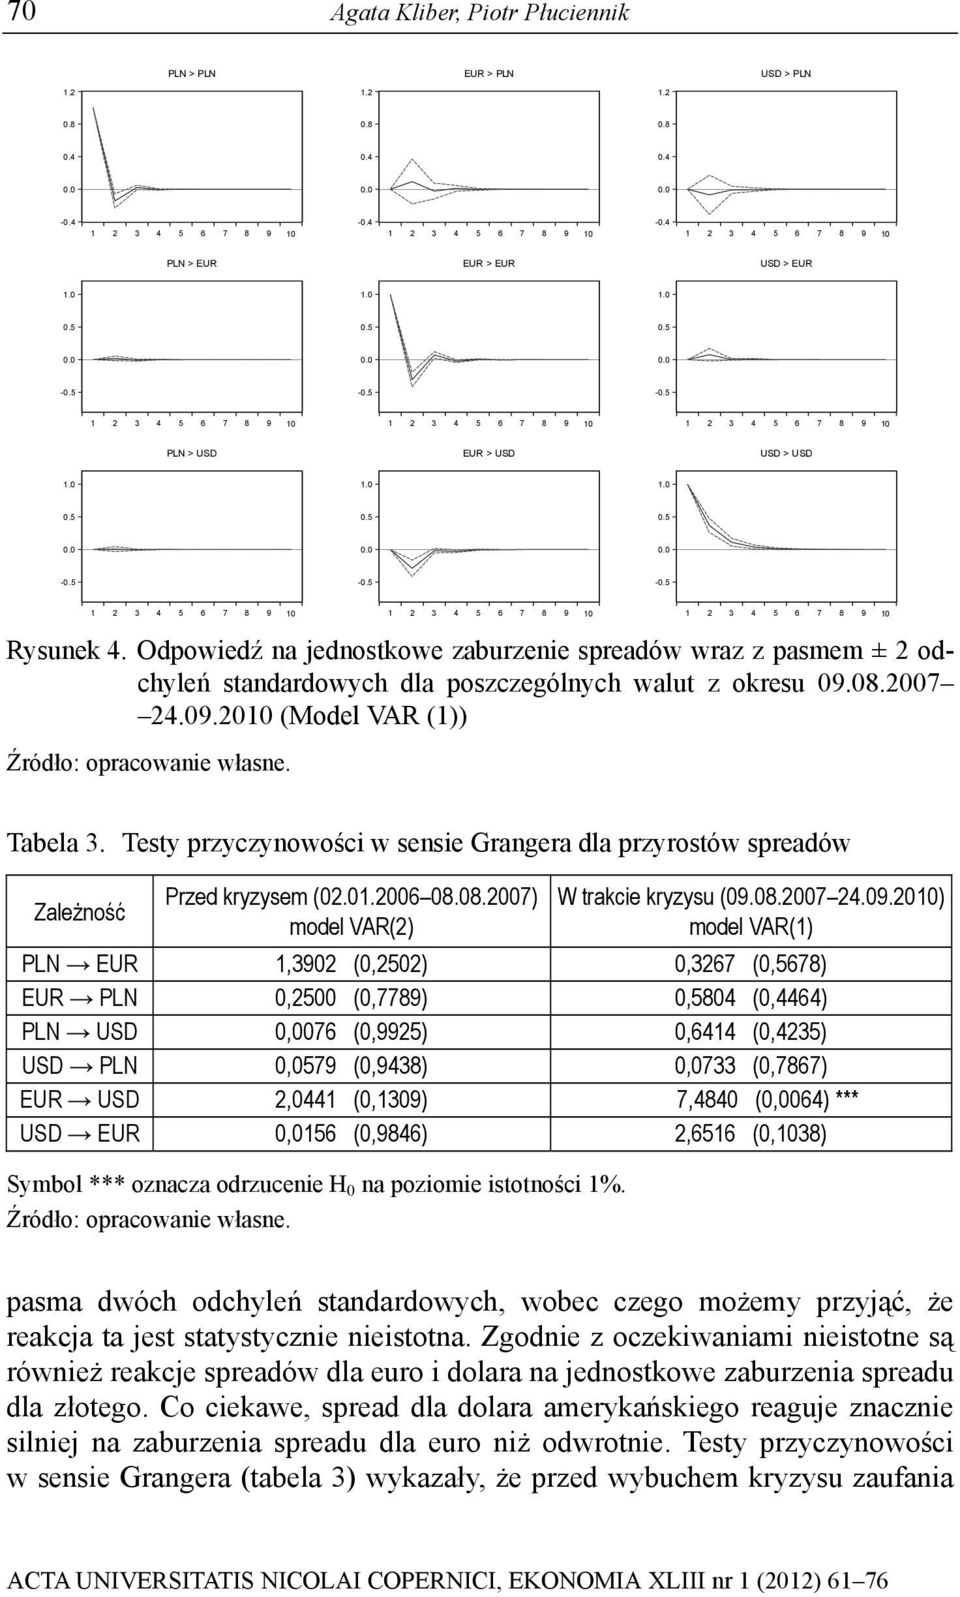 Tesy przyczynowości w sensie Grangera dla przyrosów spreadów Zależność Przed kryzysem (02.0006 08.08.2007) model VAR(2) W rakcie kryzysu (09.